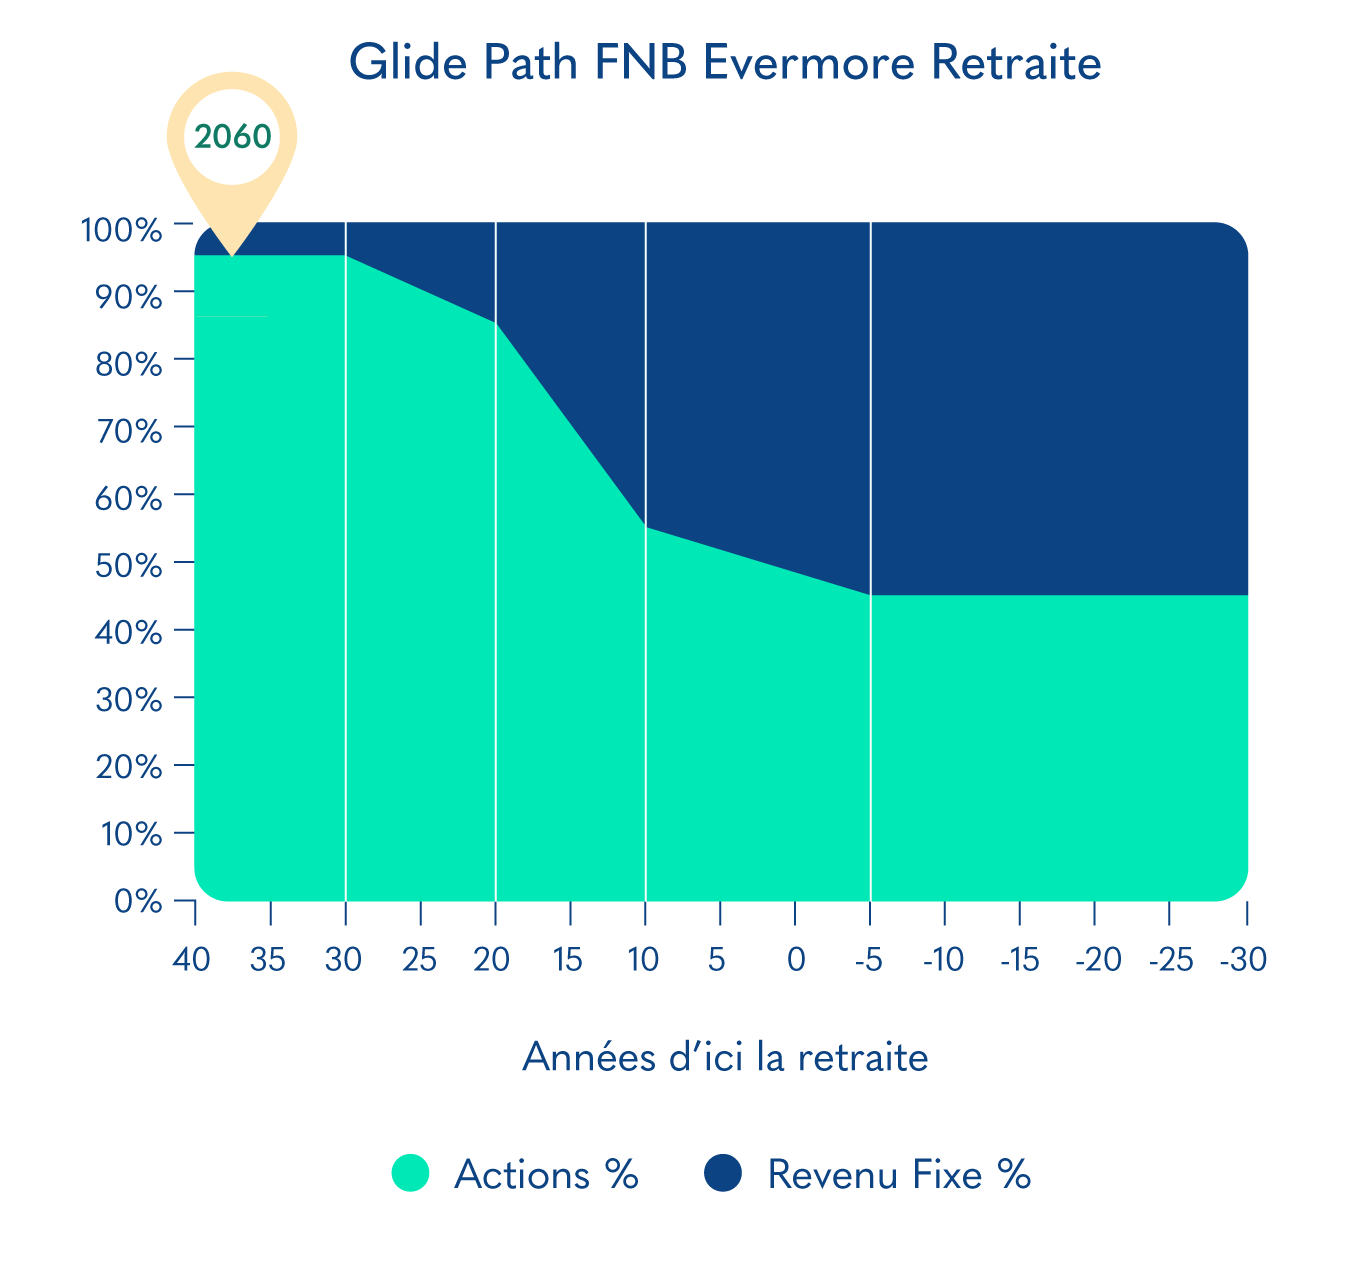 Glide Path FNB Evermore Retraite 2060